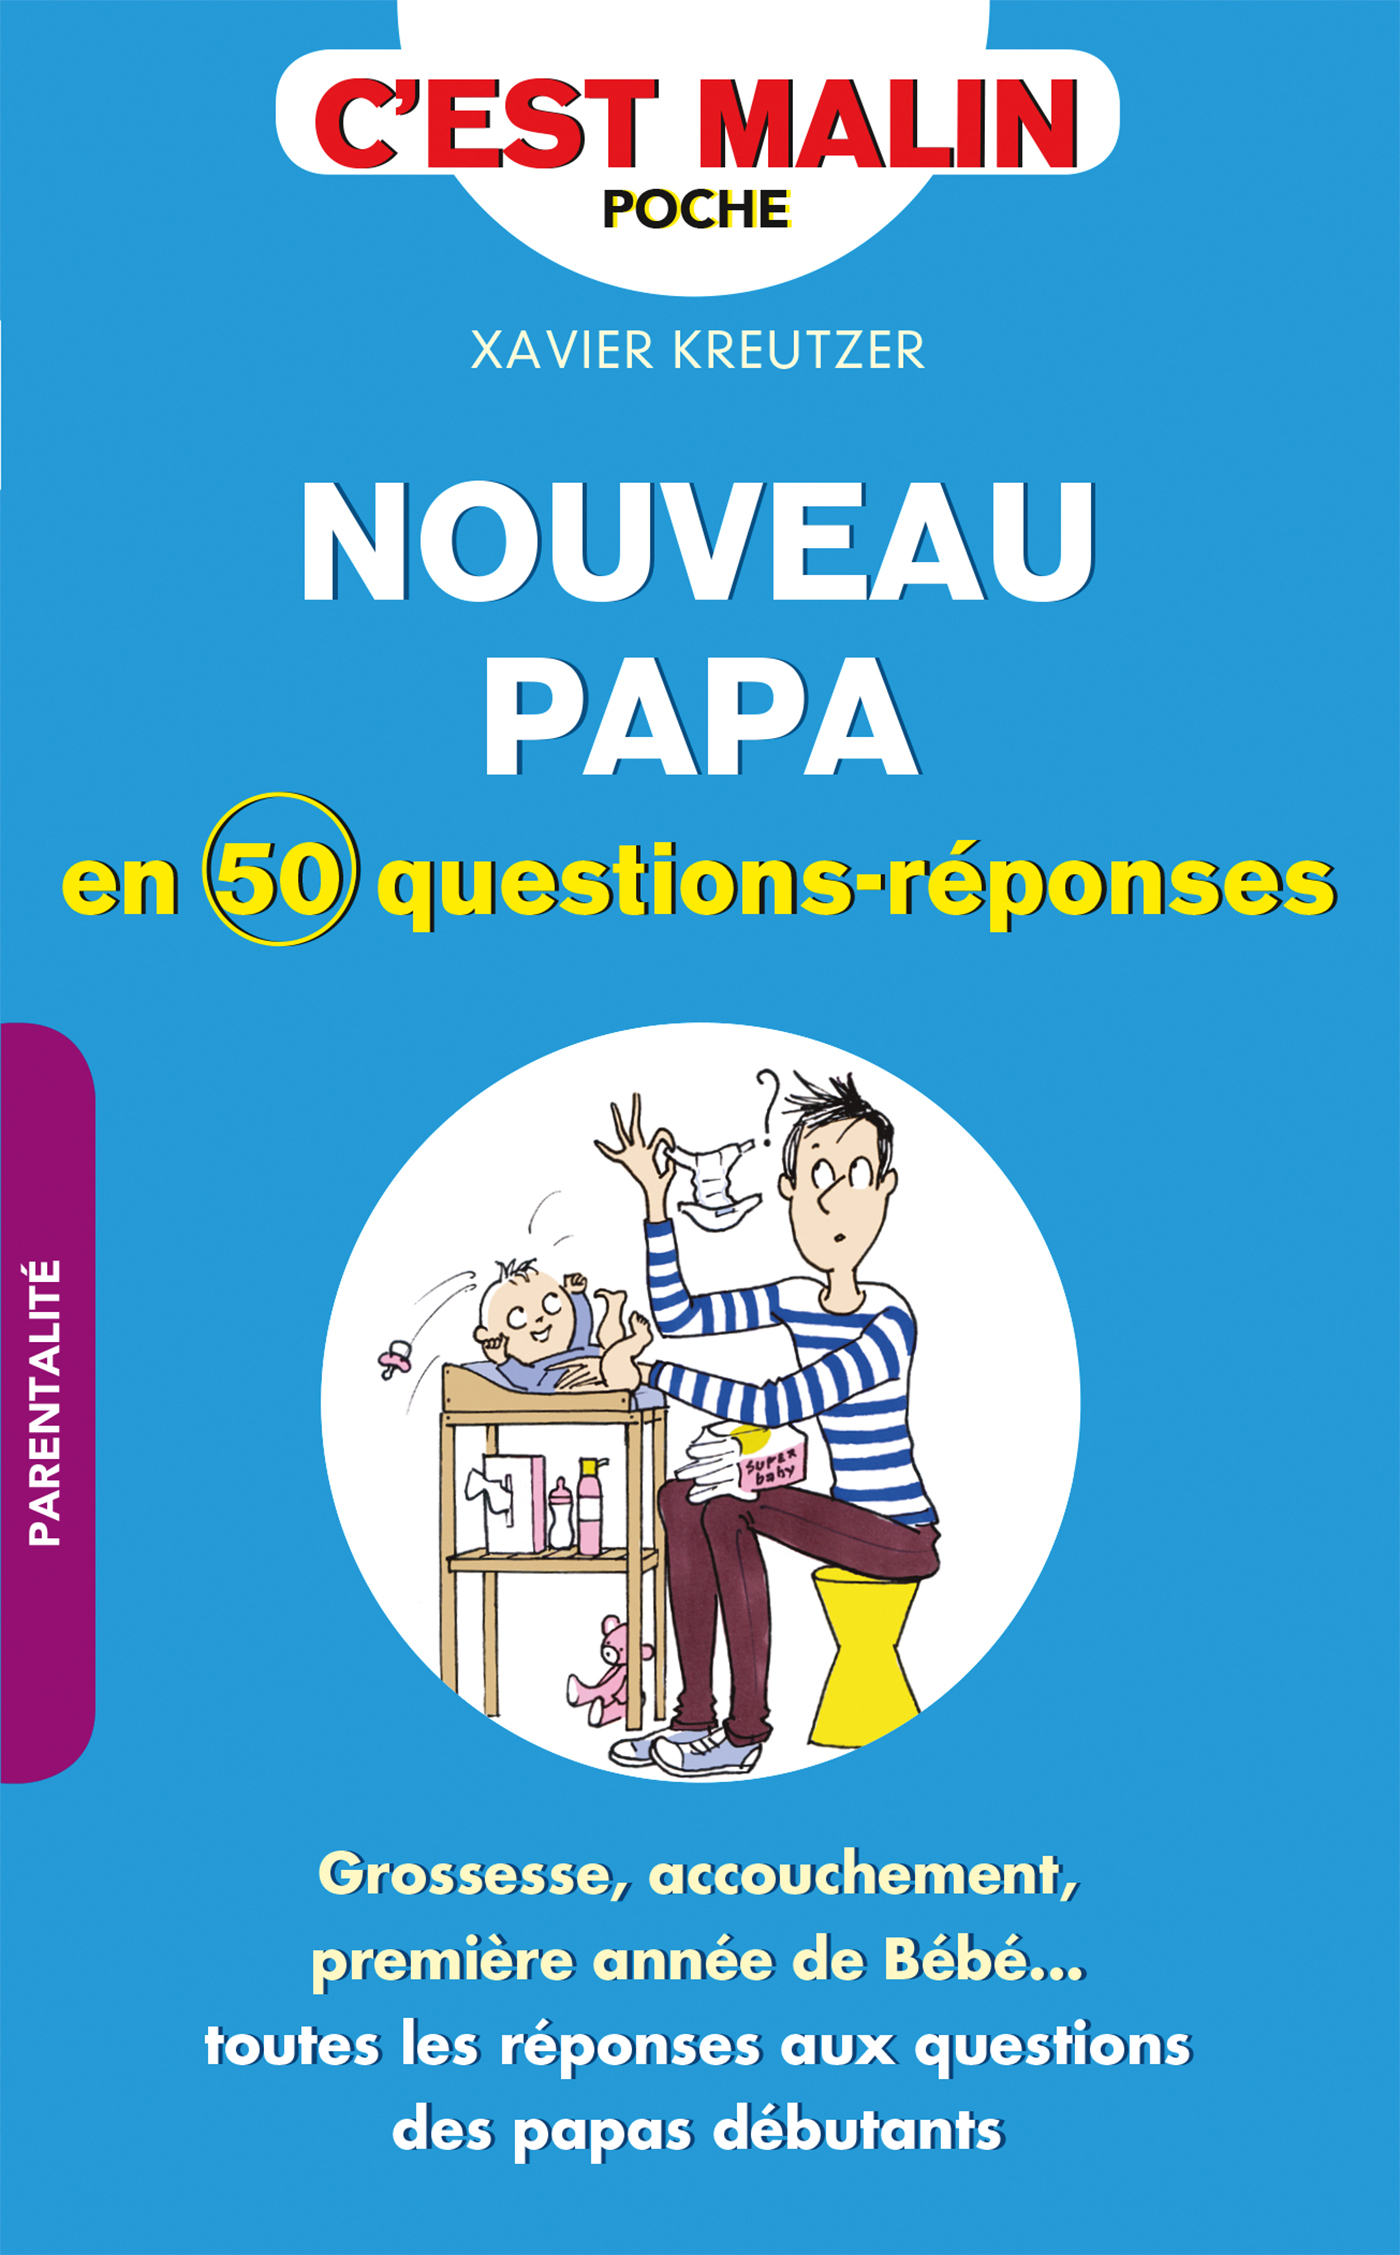 Nouveau papa en 50 questions-réponses, c'est malin - Grossesse,  accouchement, première année de bébé toutes les réponses aux questions  des papas débutants - Xavier Kreutzer (EAN13 : 9791028507503)